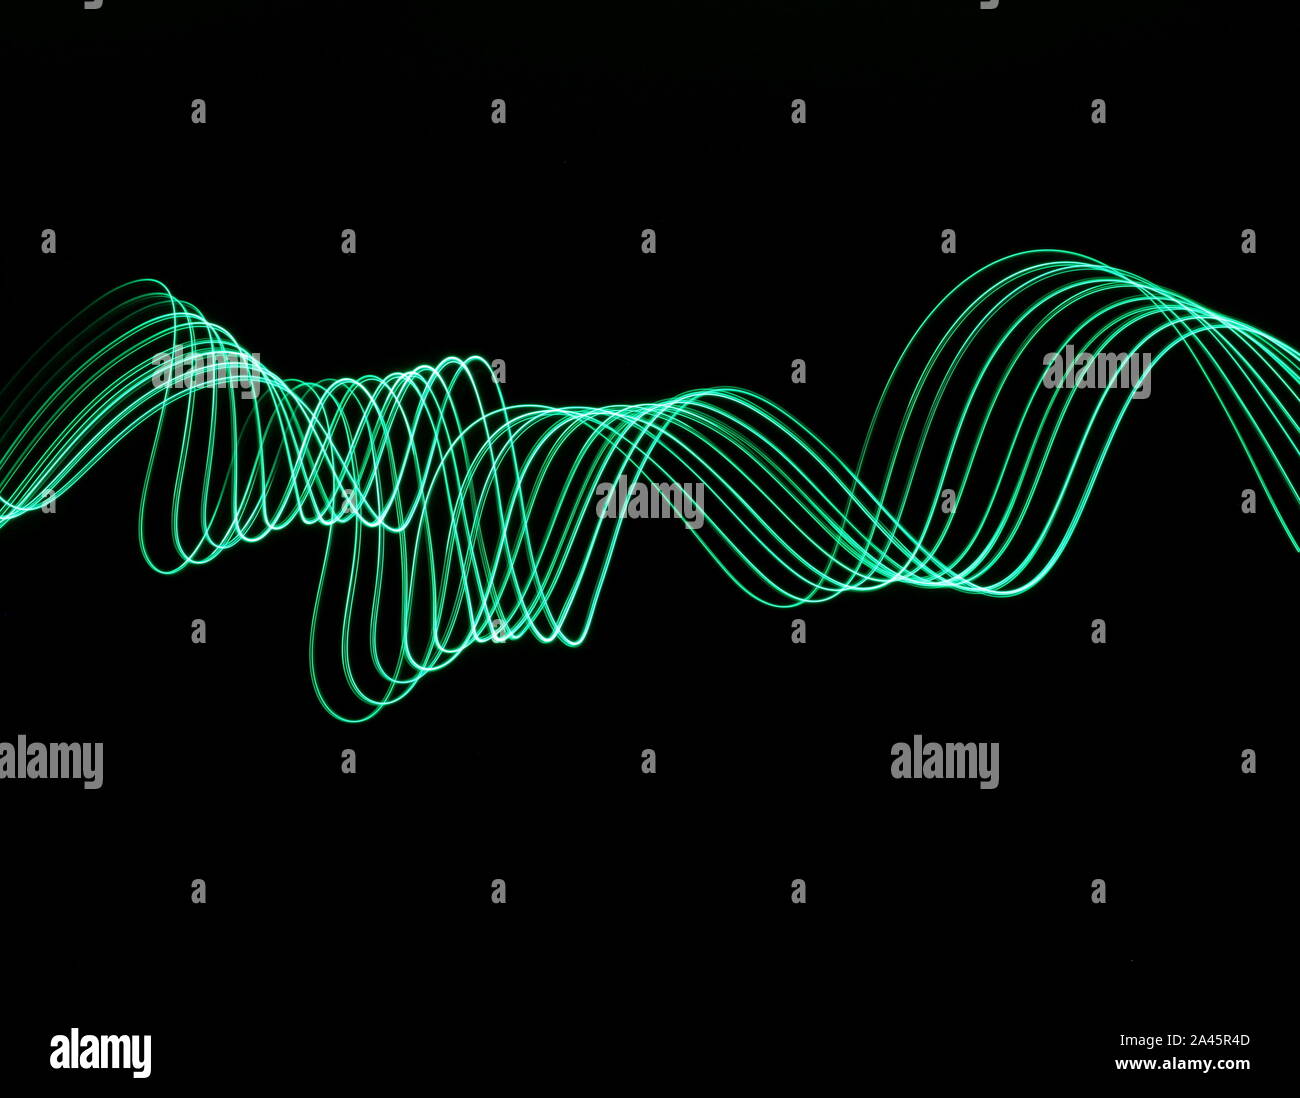 Une longue exposition photo de couleur vert néon dans un abrégé swirl, motif de lignes parallèles sur un fond noir. La lumière peinture photographie. Banque D'Images